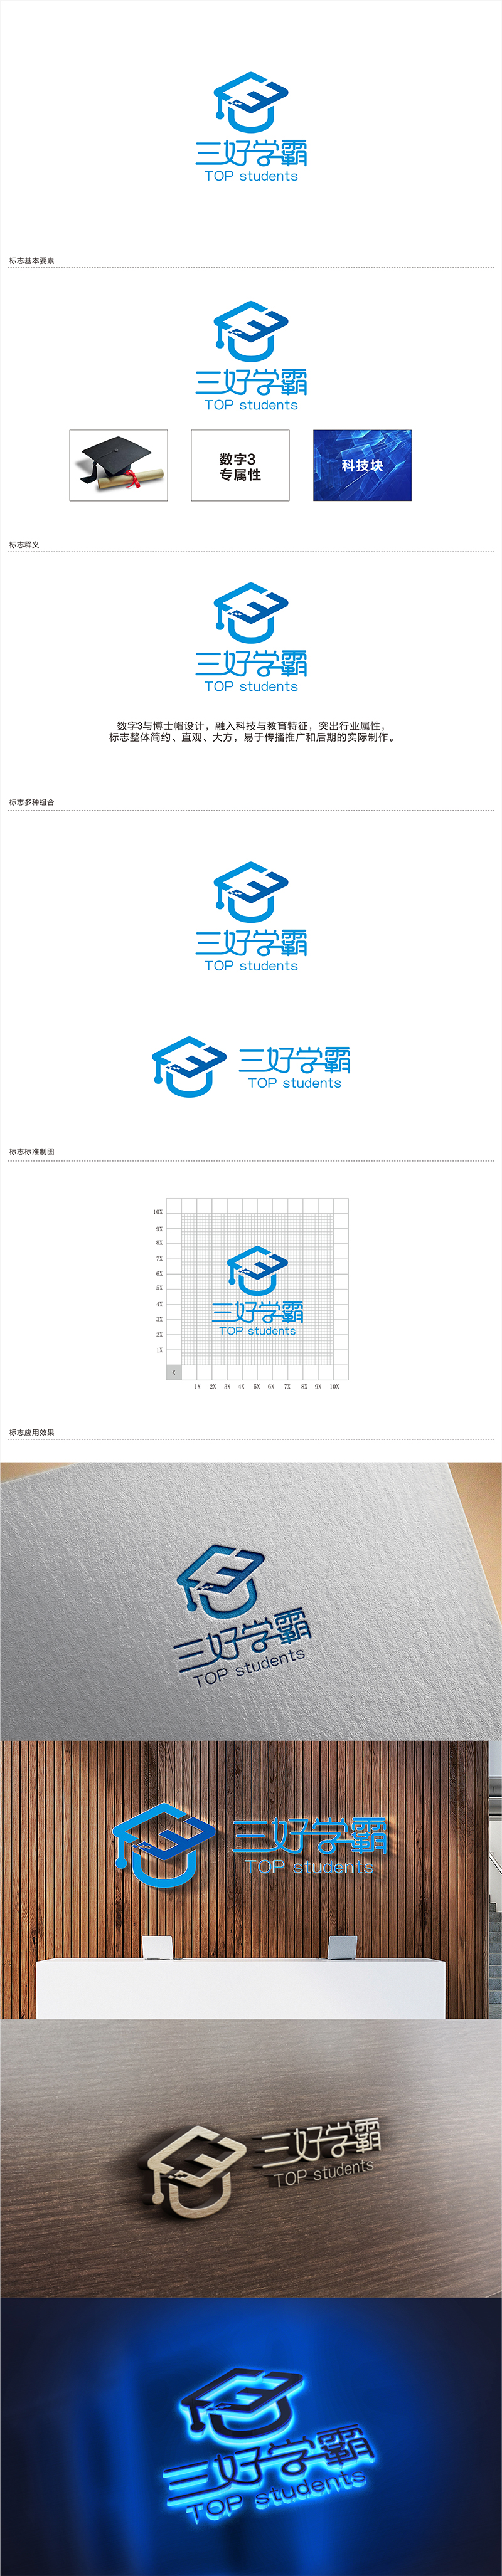 邓建平的三好学霸logo设计